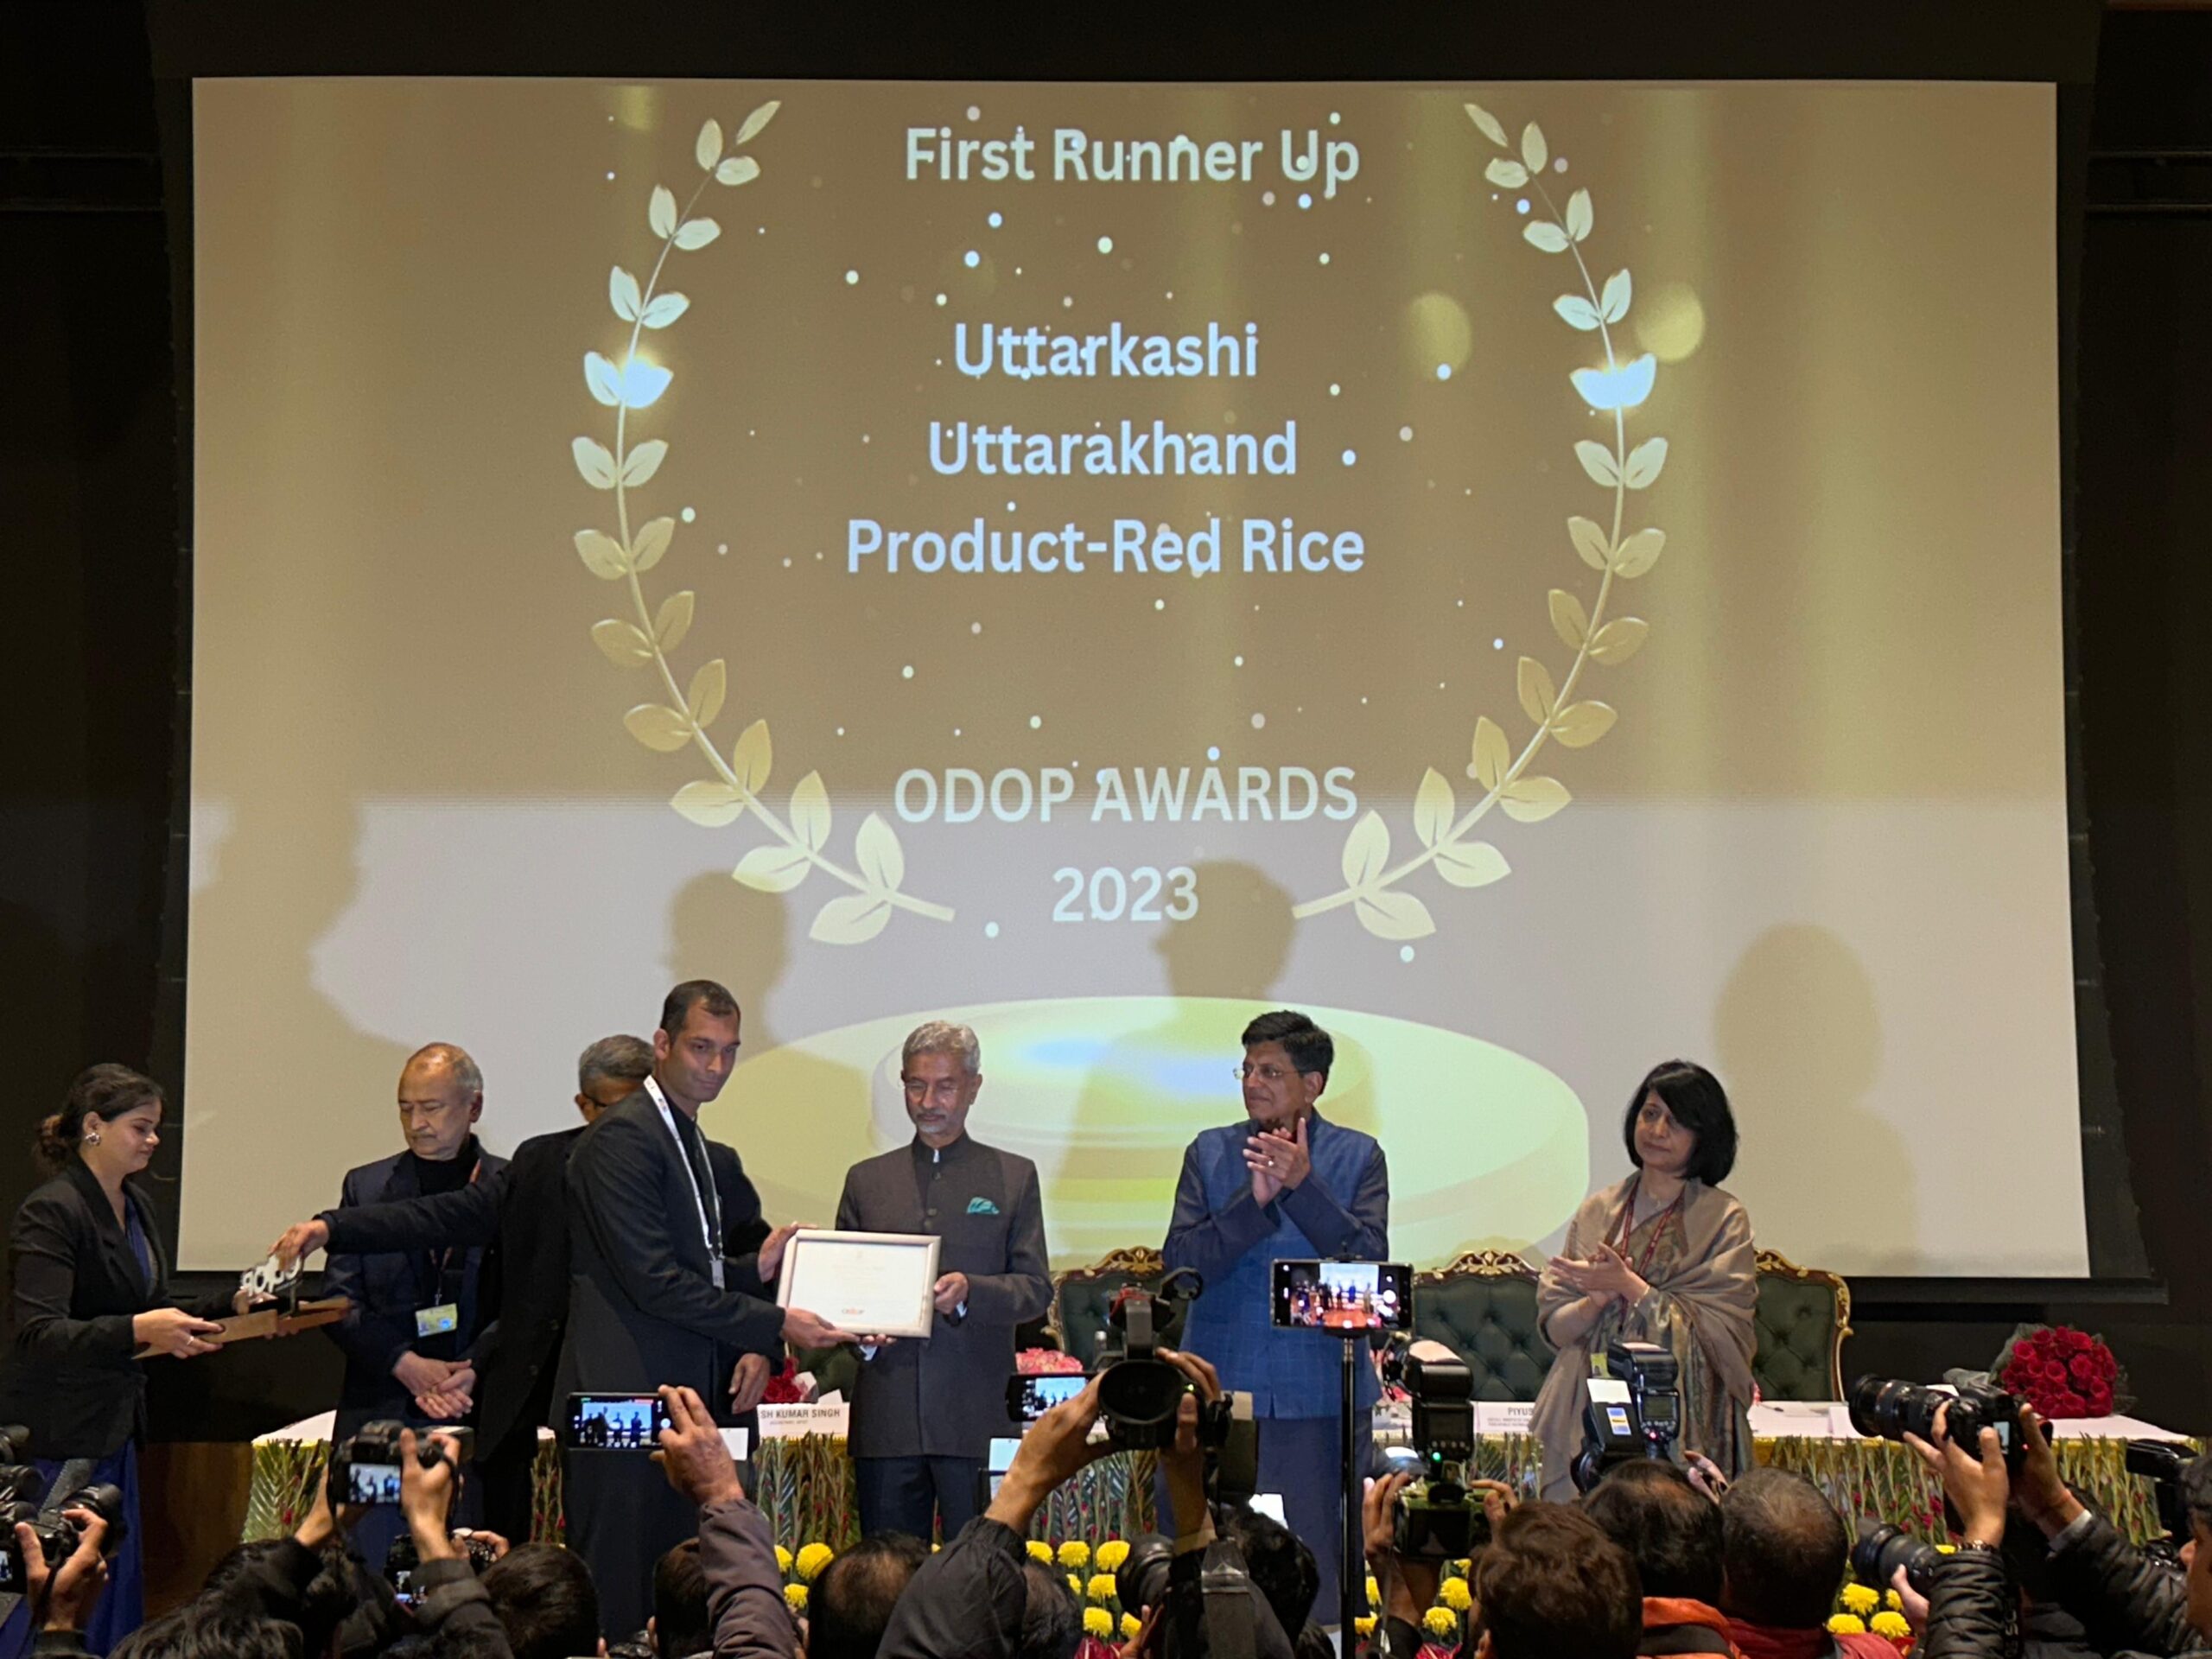 उत्तराखंड व उत्तरकाशी ओडोओपी नेशनल अवार्ड  में मिला द्वितीय पुरस्कार, देश के 500 जिलों के बीच उत्तरकाशी ने खेती  के लिए बेहतर प्रयासों हेतु जीता ईनाम